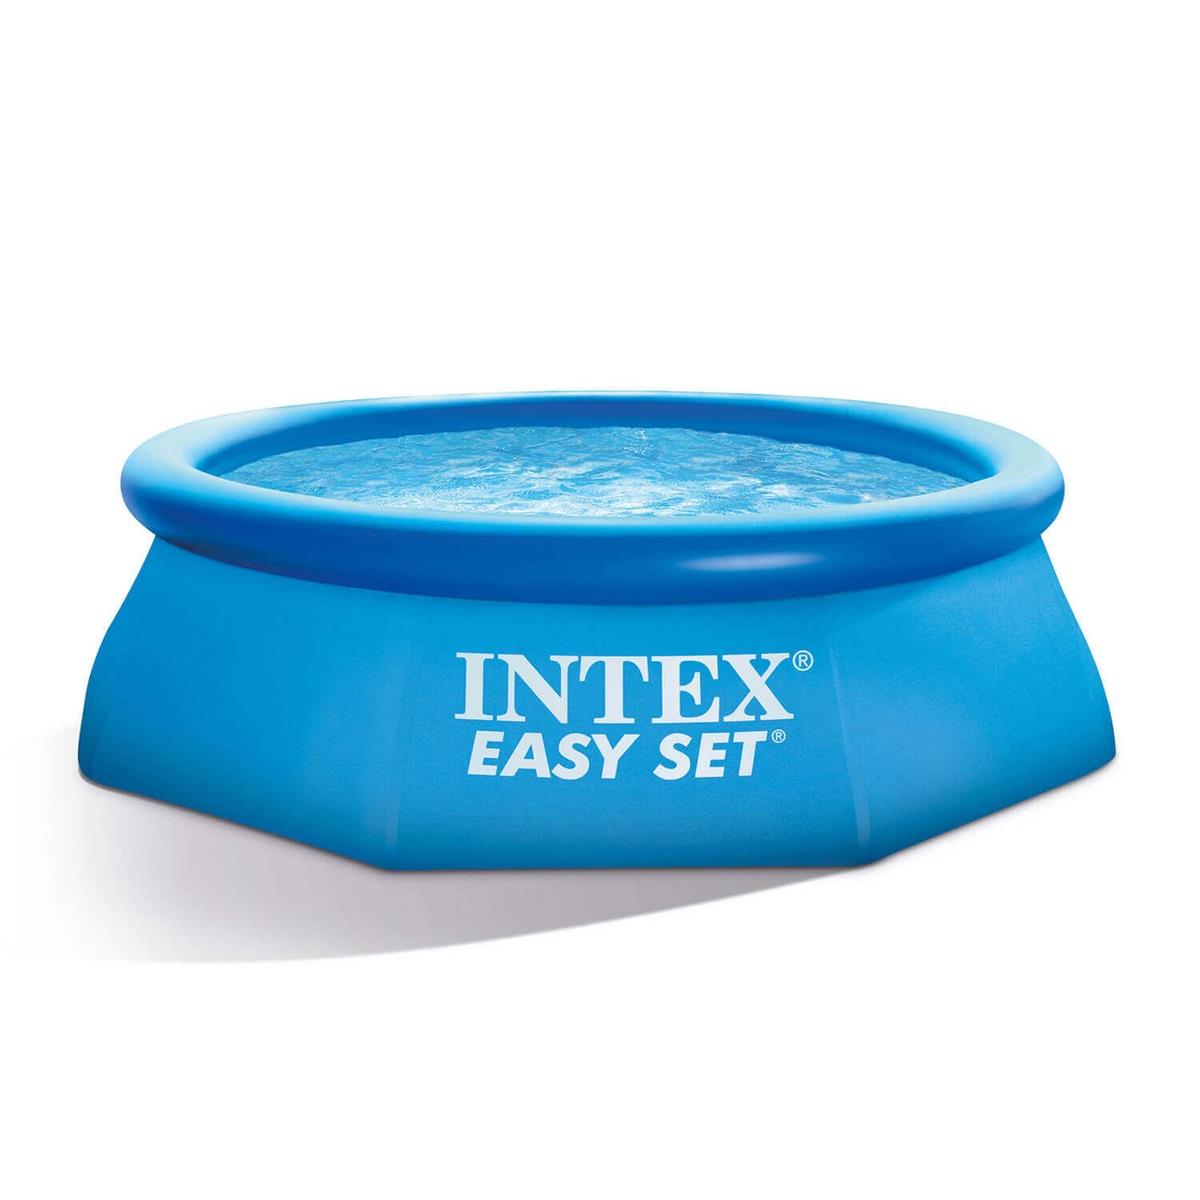 Бассейн Easy Set 2.44 х 0,61 м (28106) INTEX бассейн надувной intex 244х61 см easy set 28106np 1942 л